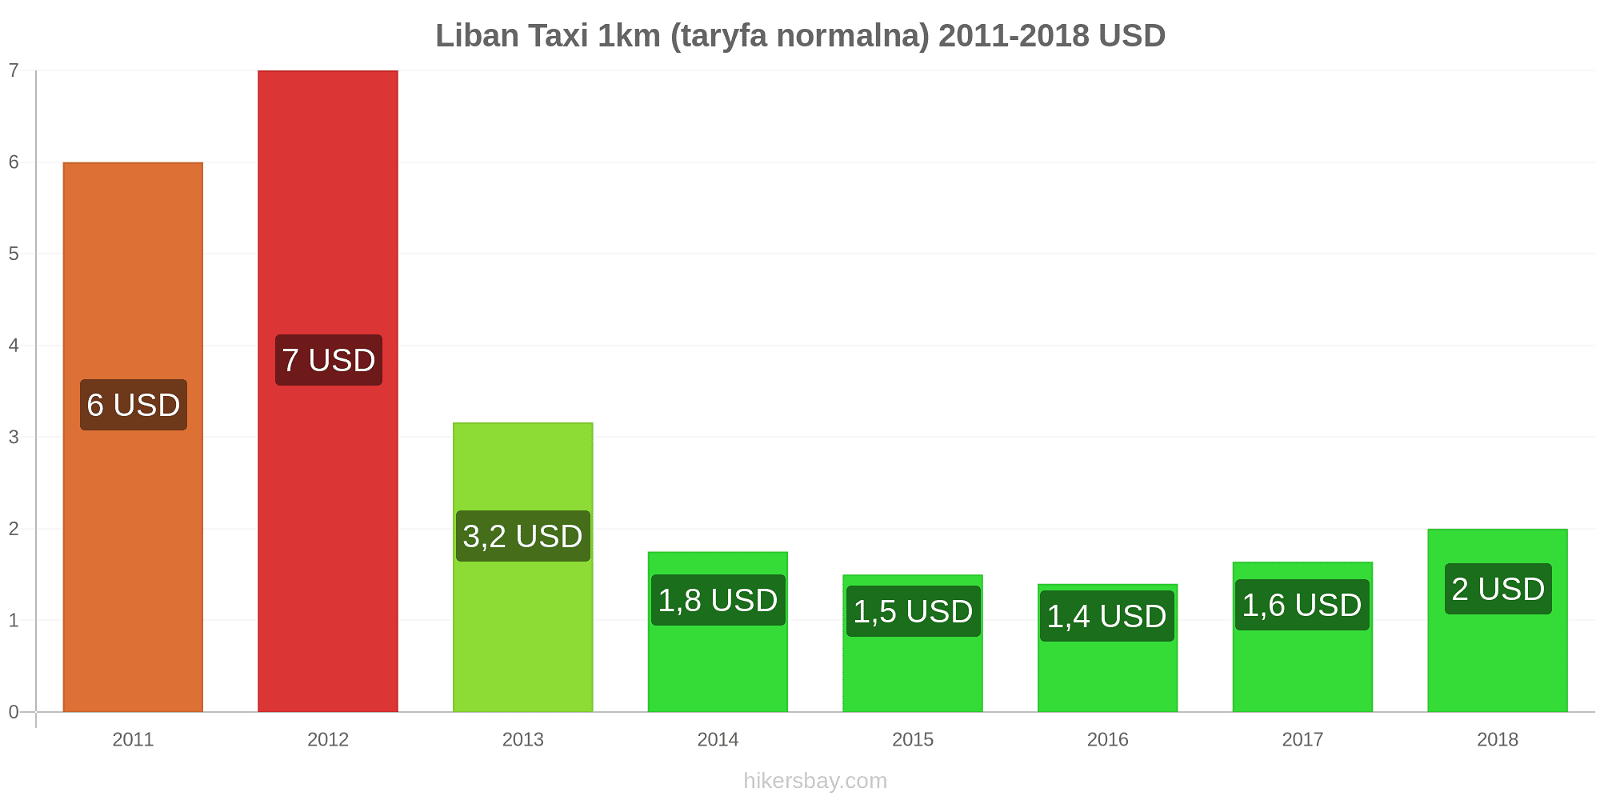 Liban zmiany cen Taxi 1km (taryfa normalna) hikersbay.com